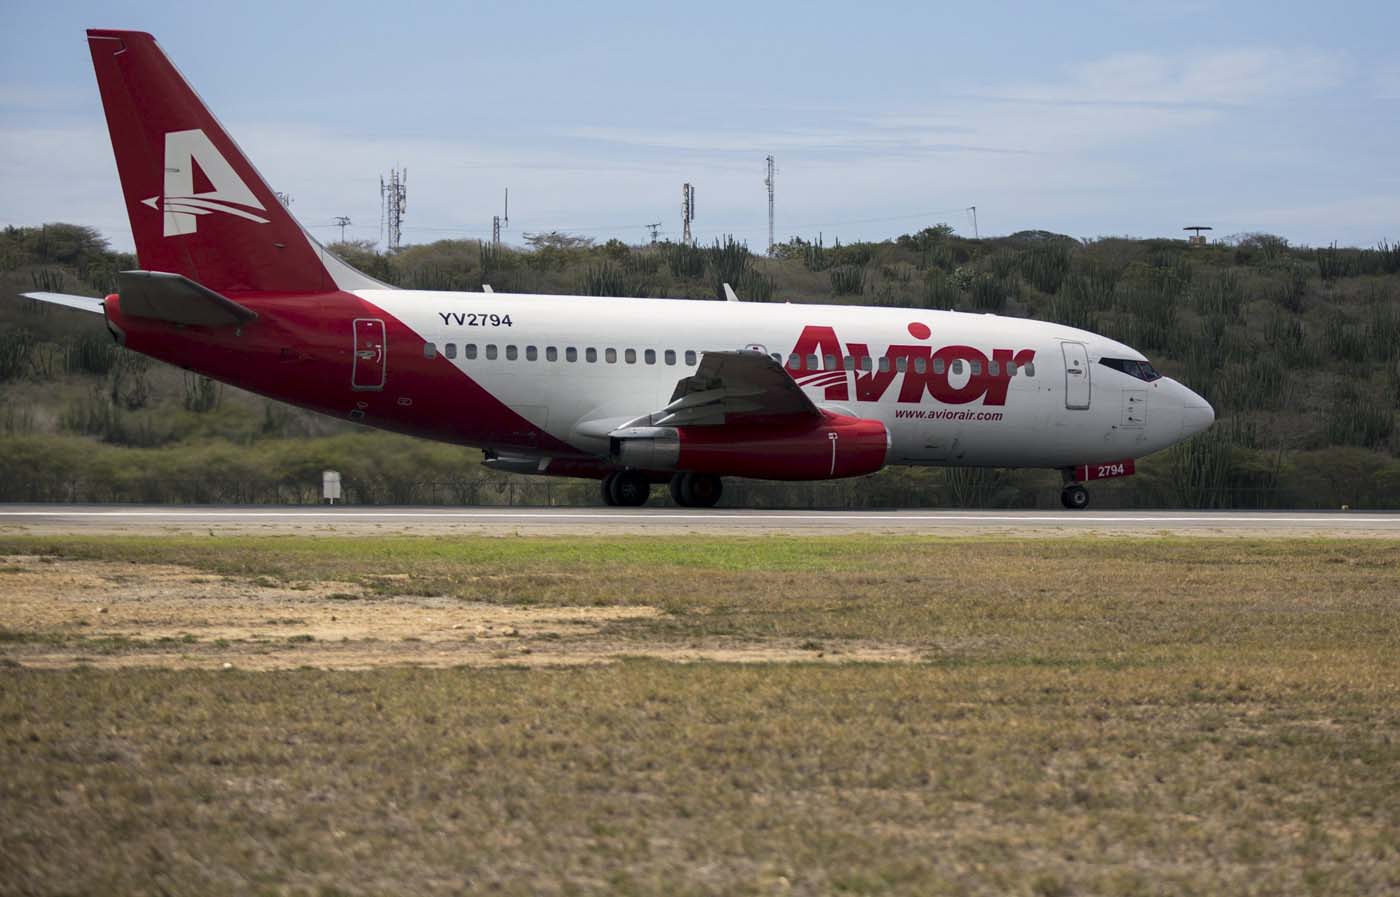 Avior Airlines encabeza listado de las aerolíneas más peligrosas del mundo (LISTA)